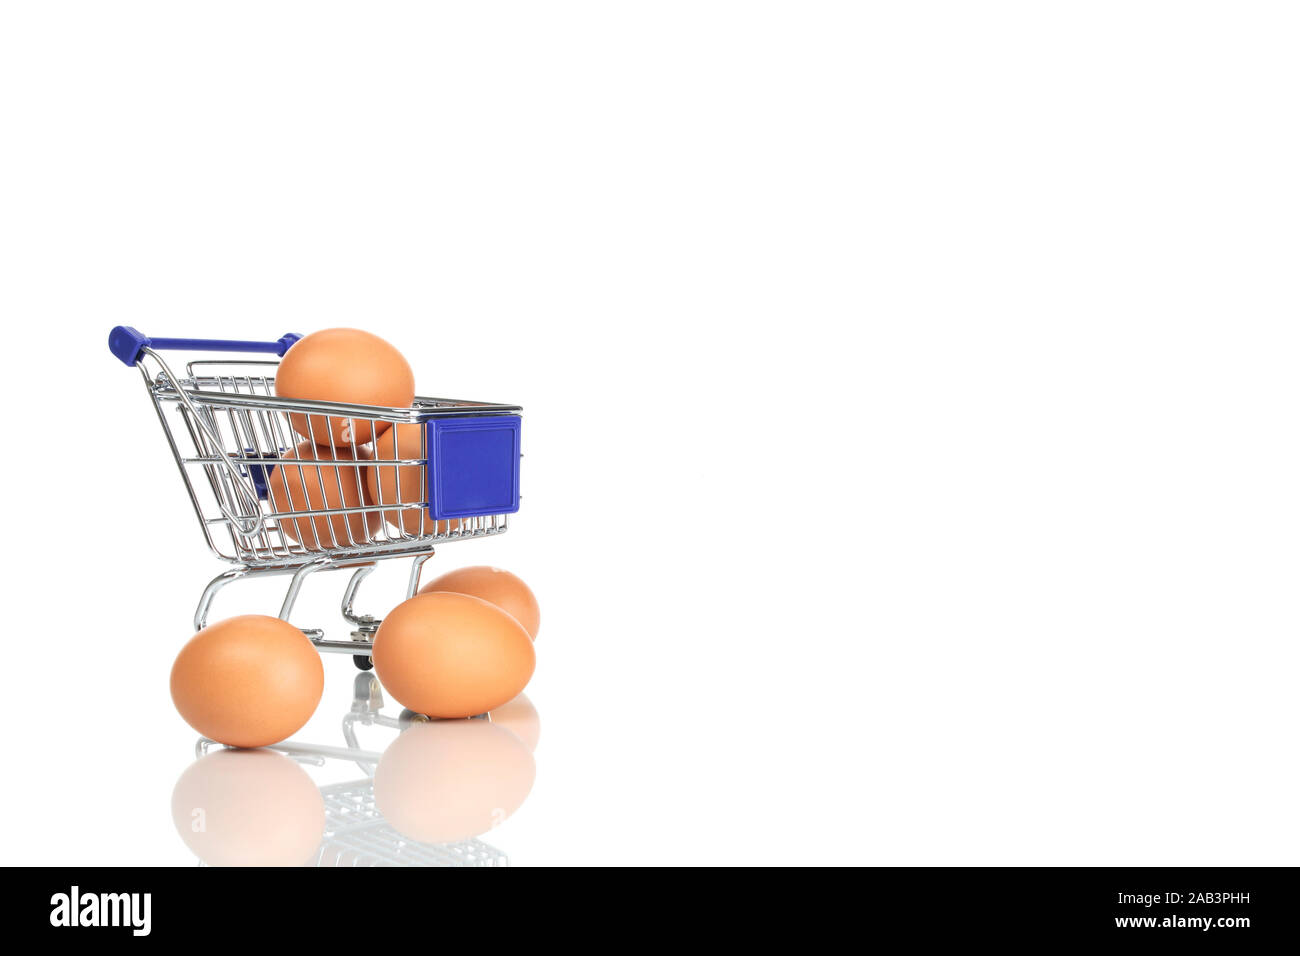 Einkaufswagen und Eier Stock Photo